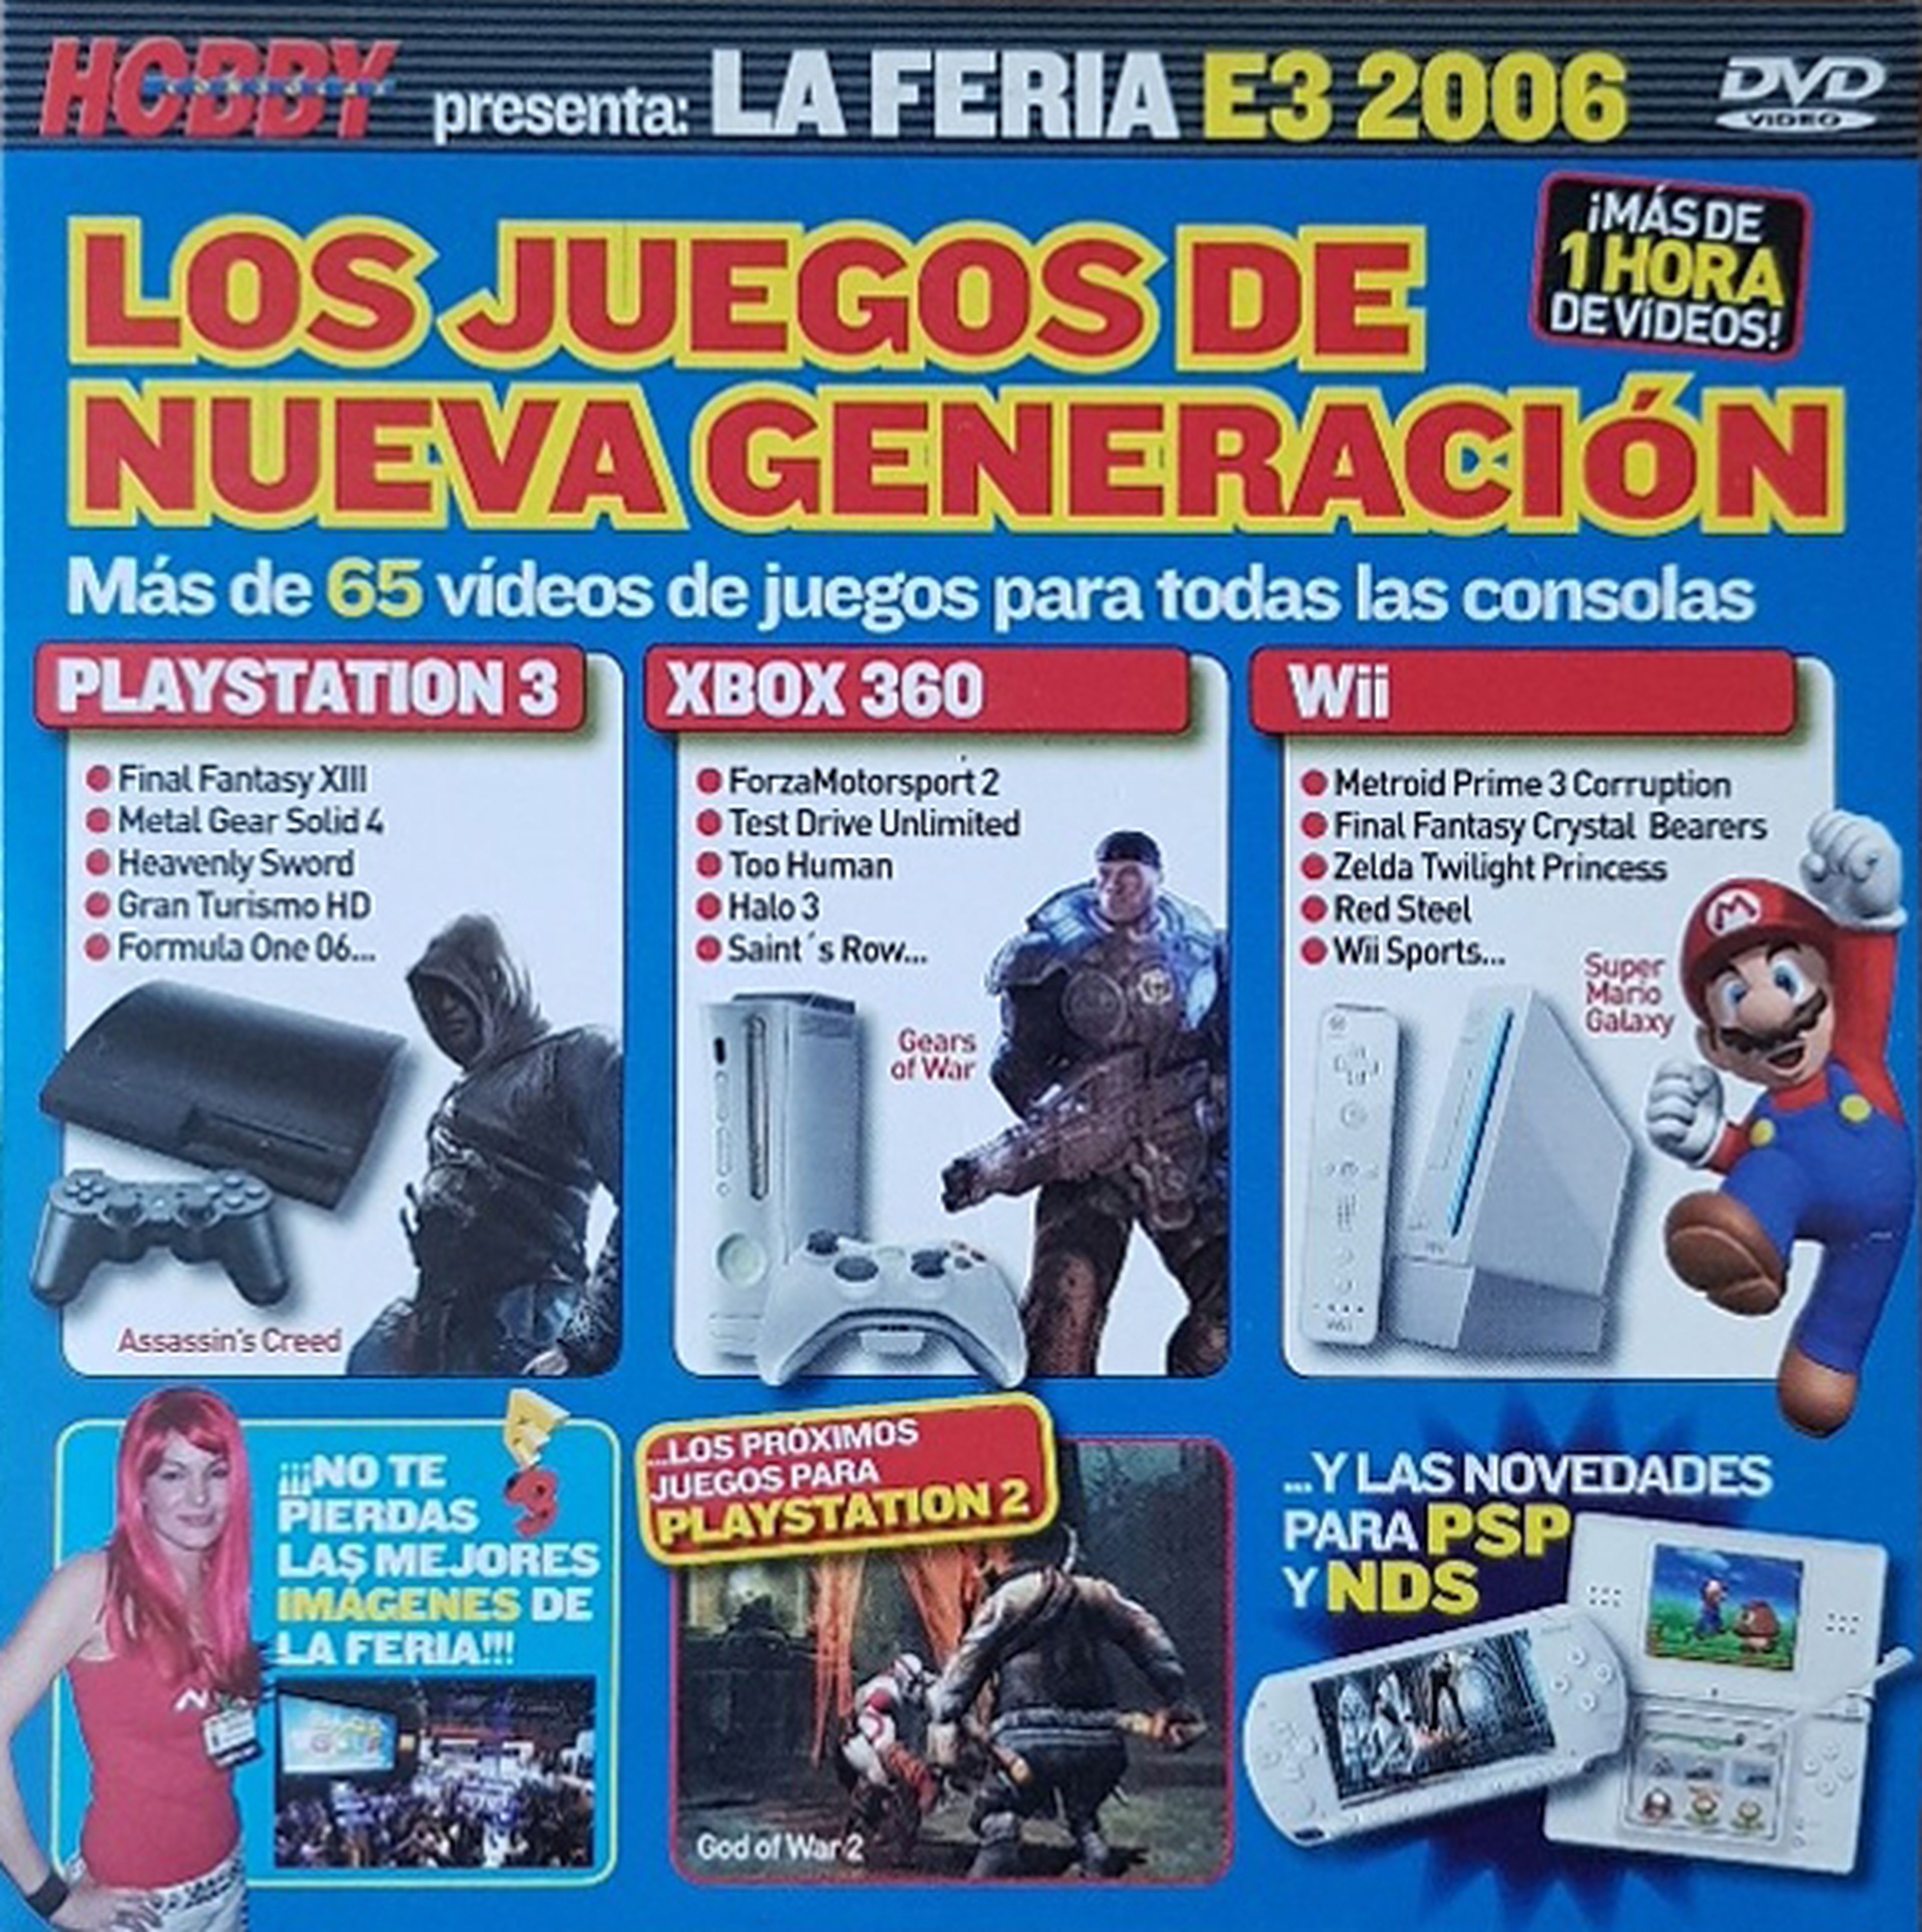 Hobby Consolas presenta la feria E3 2006 DVD